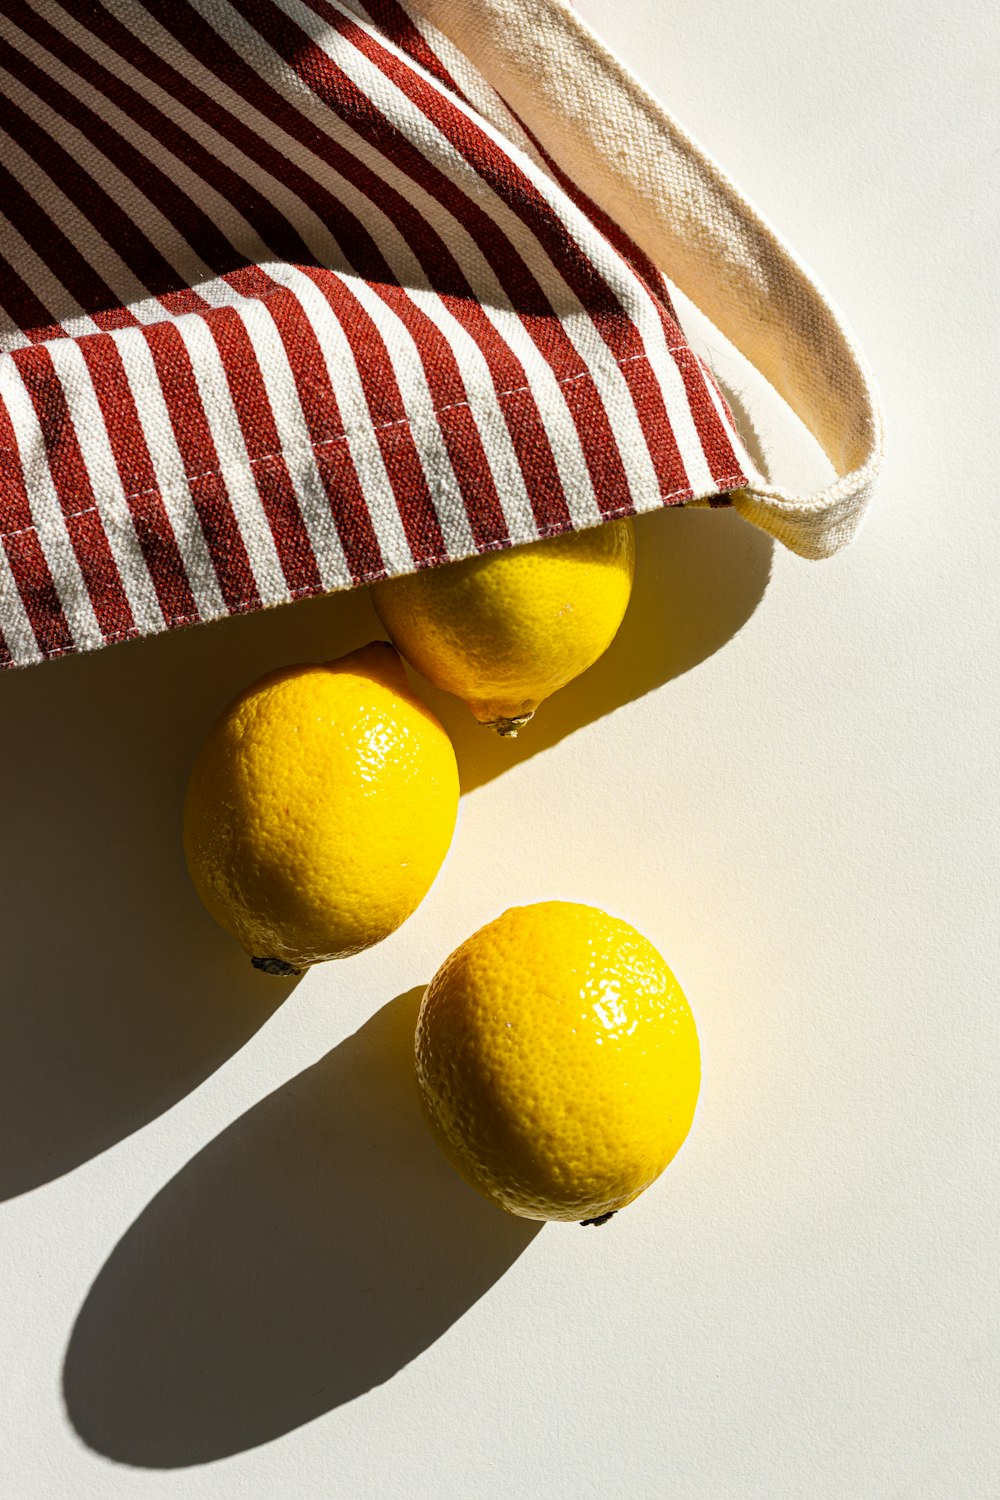 Trois citrons dans un sac rayé rouge et blanc